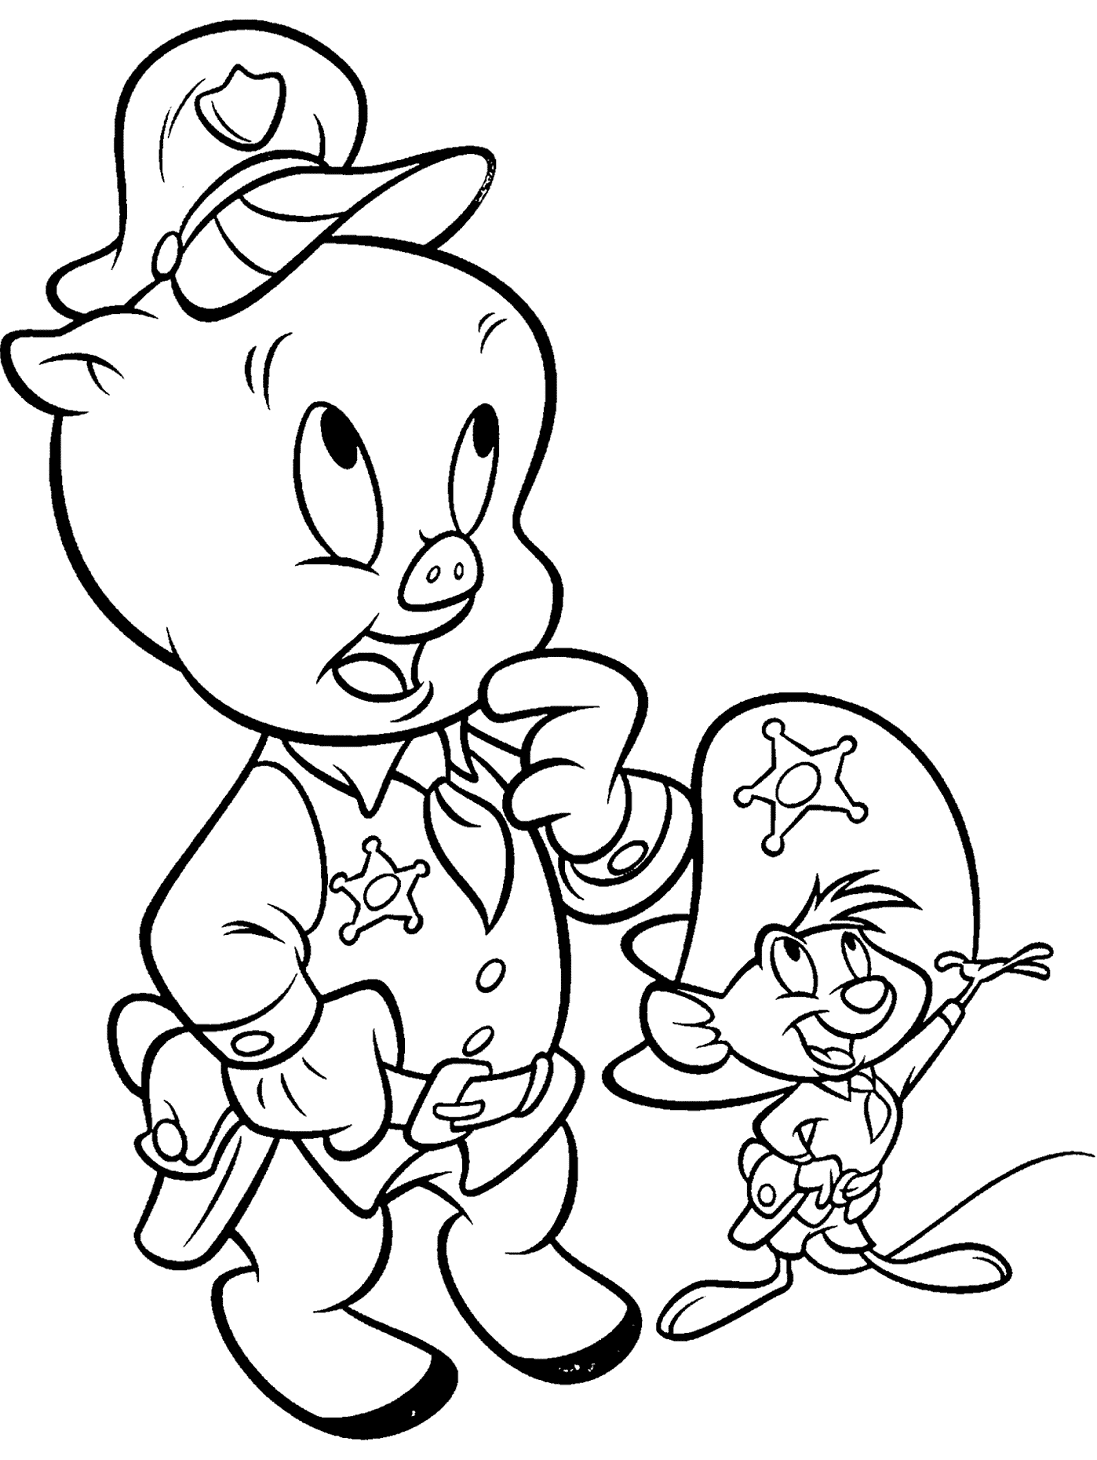 Porky Pig e Speedy Gonzalez dei personaggi di Looney Tunes